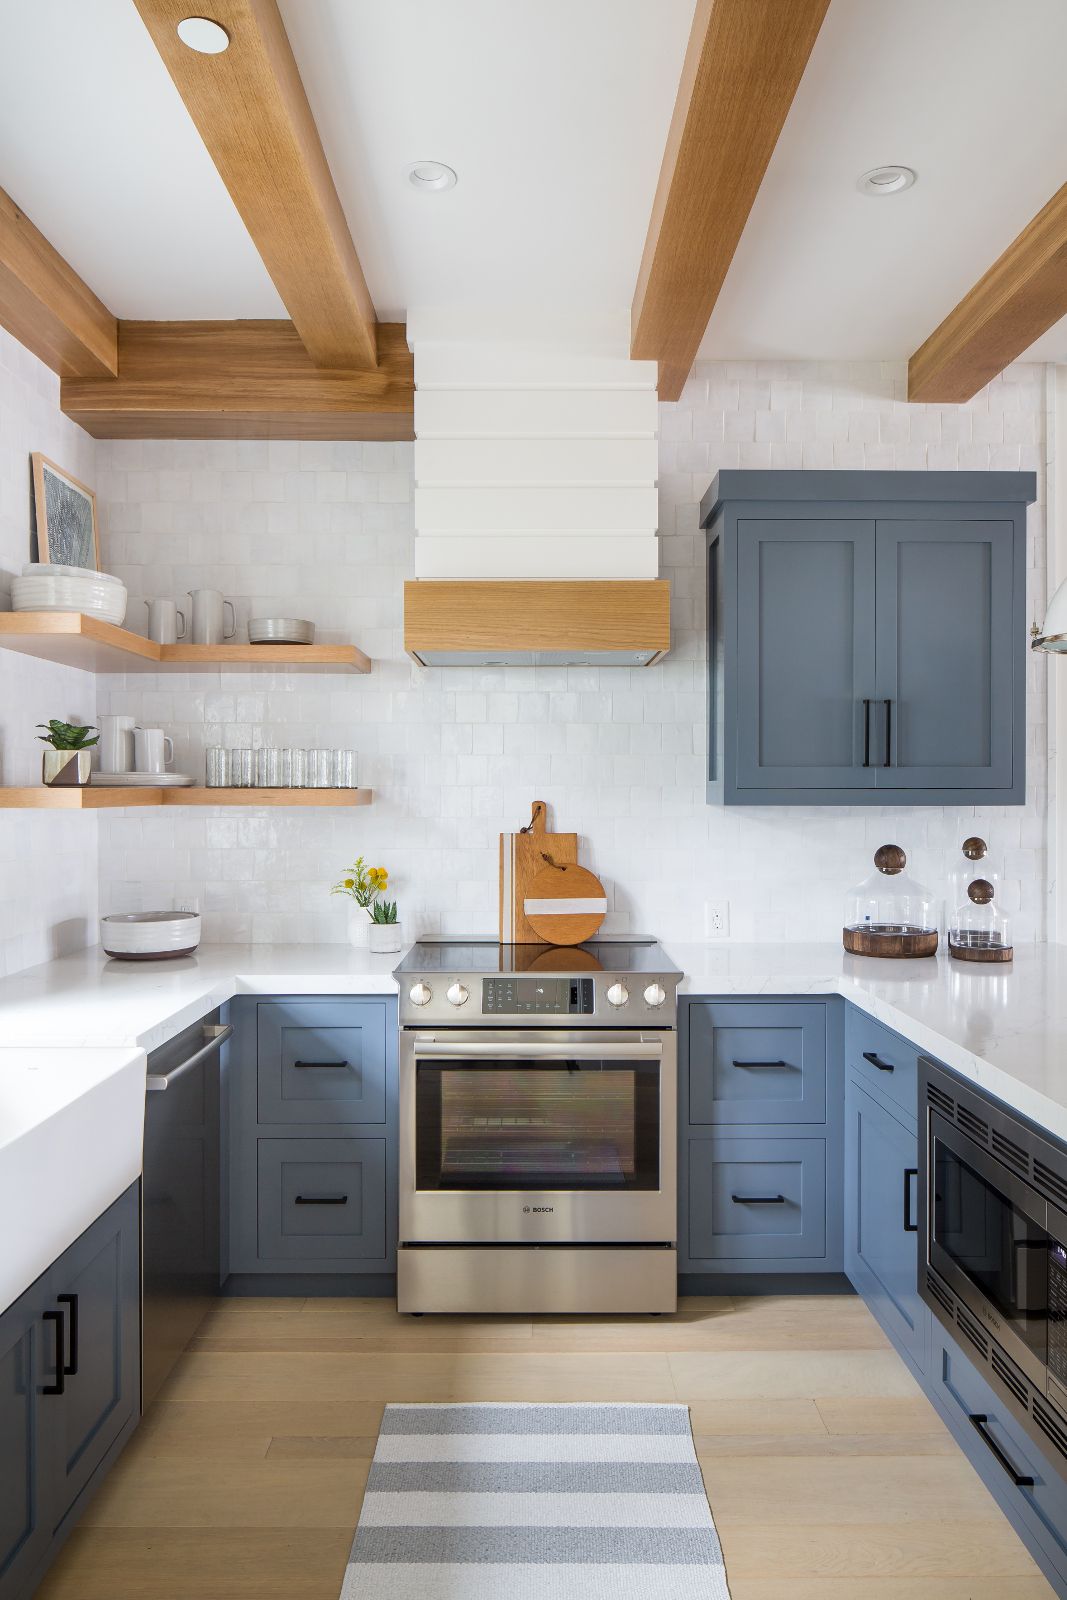 Hệ tủ bếp dưới có thể nên lựa chọn gam màu xanh xám, màu mang đến sự yên tĩnh và ấm cúng, hiện đại nhưng không kém phần nổi bật cho không gian nấu nướng của gia đình bạn.